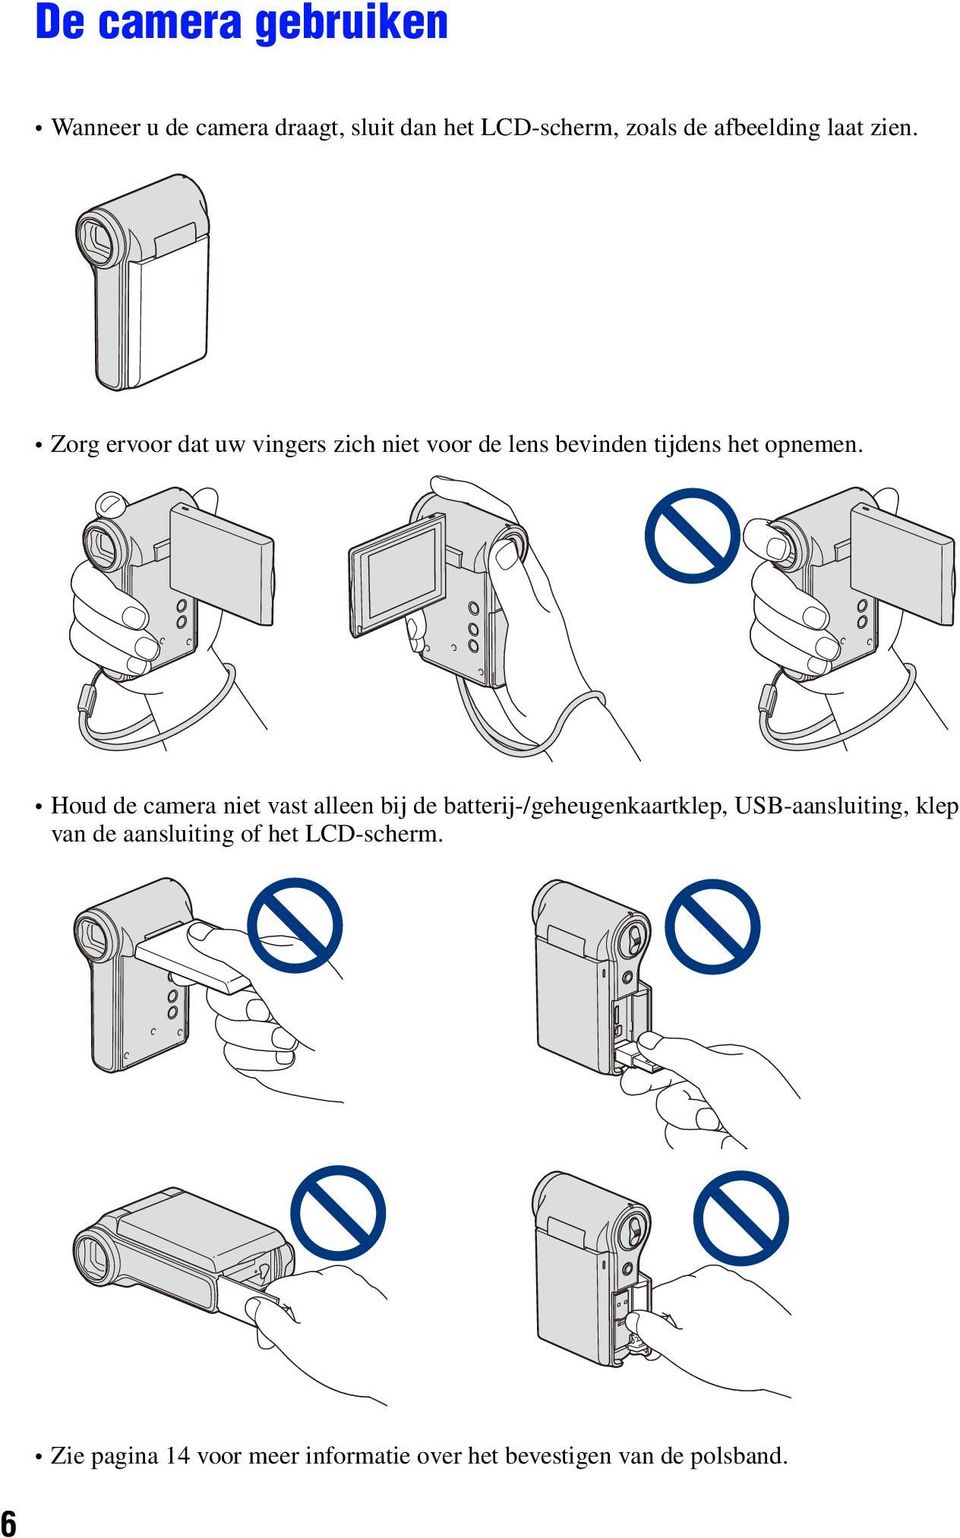 Houd de camera niet vast alleen bij de batterij-/geheugenkaartklep, USB-aansluiting, klep van de